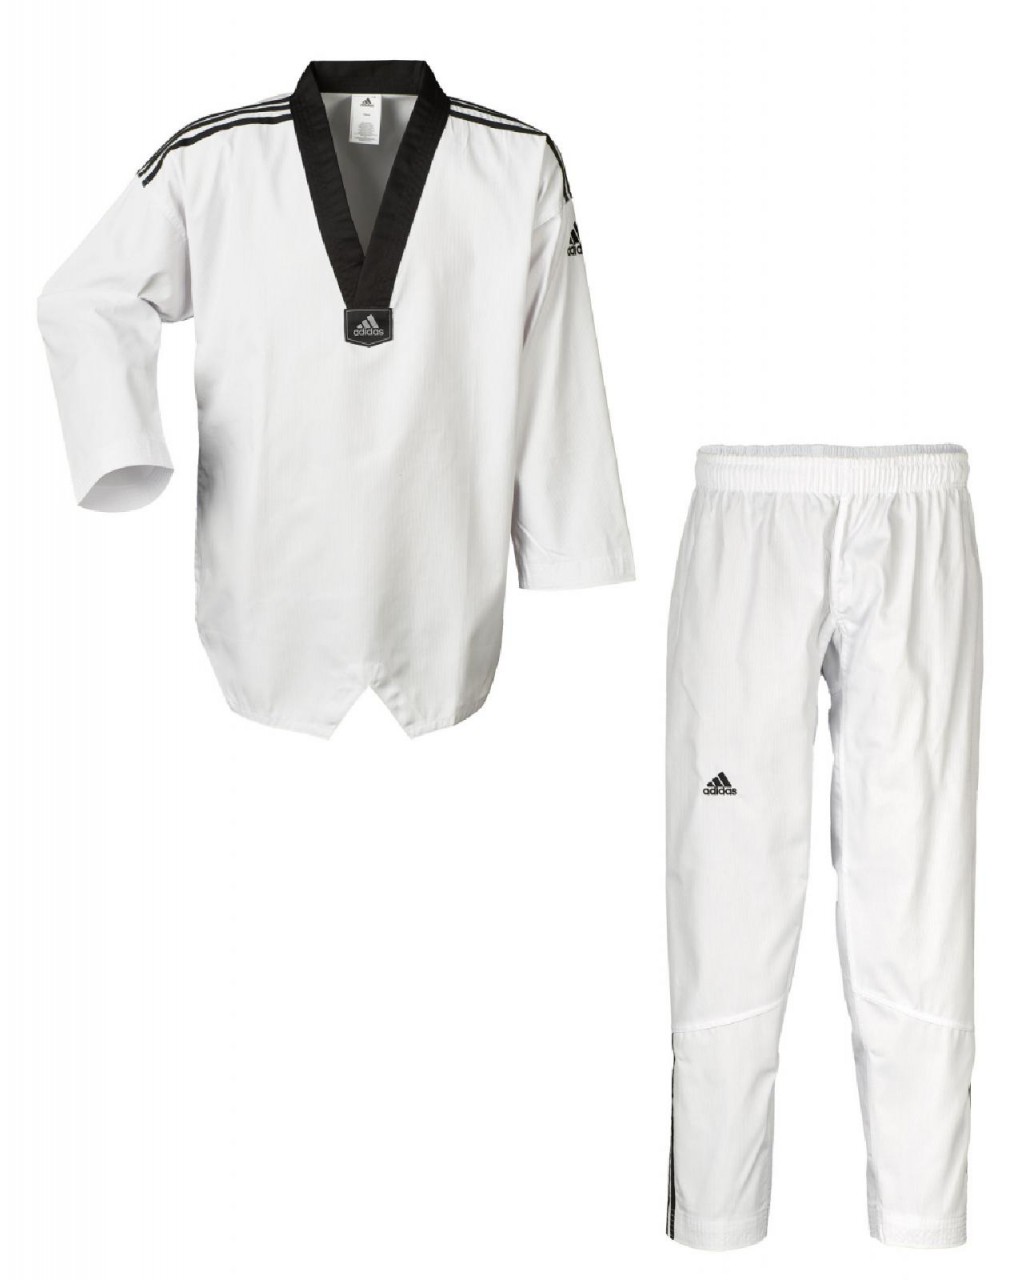 Adidas Taekwondoanzug, Adi Club 3 stripes, schwarzes Revers von Ju-Sports